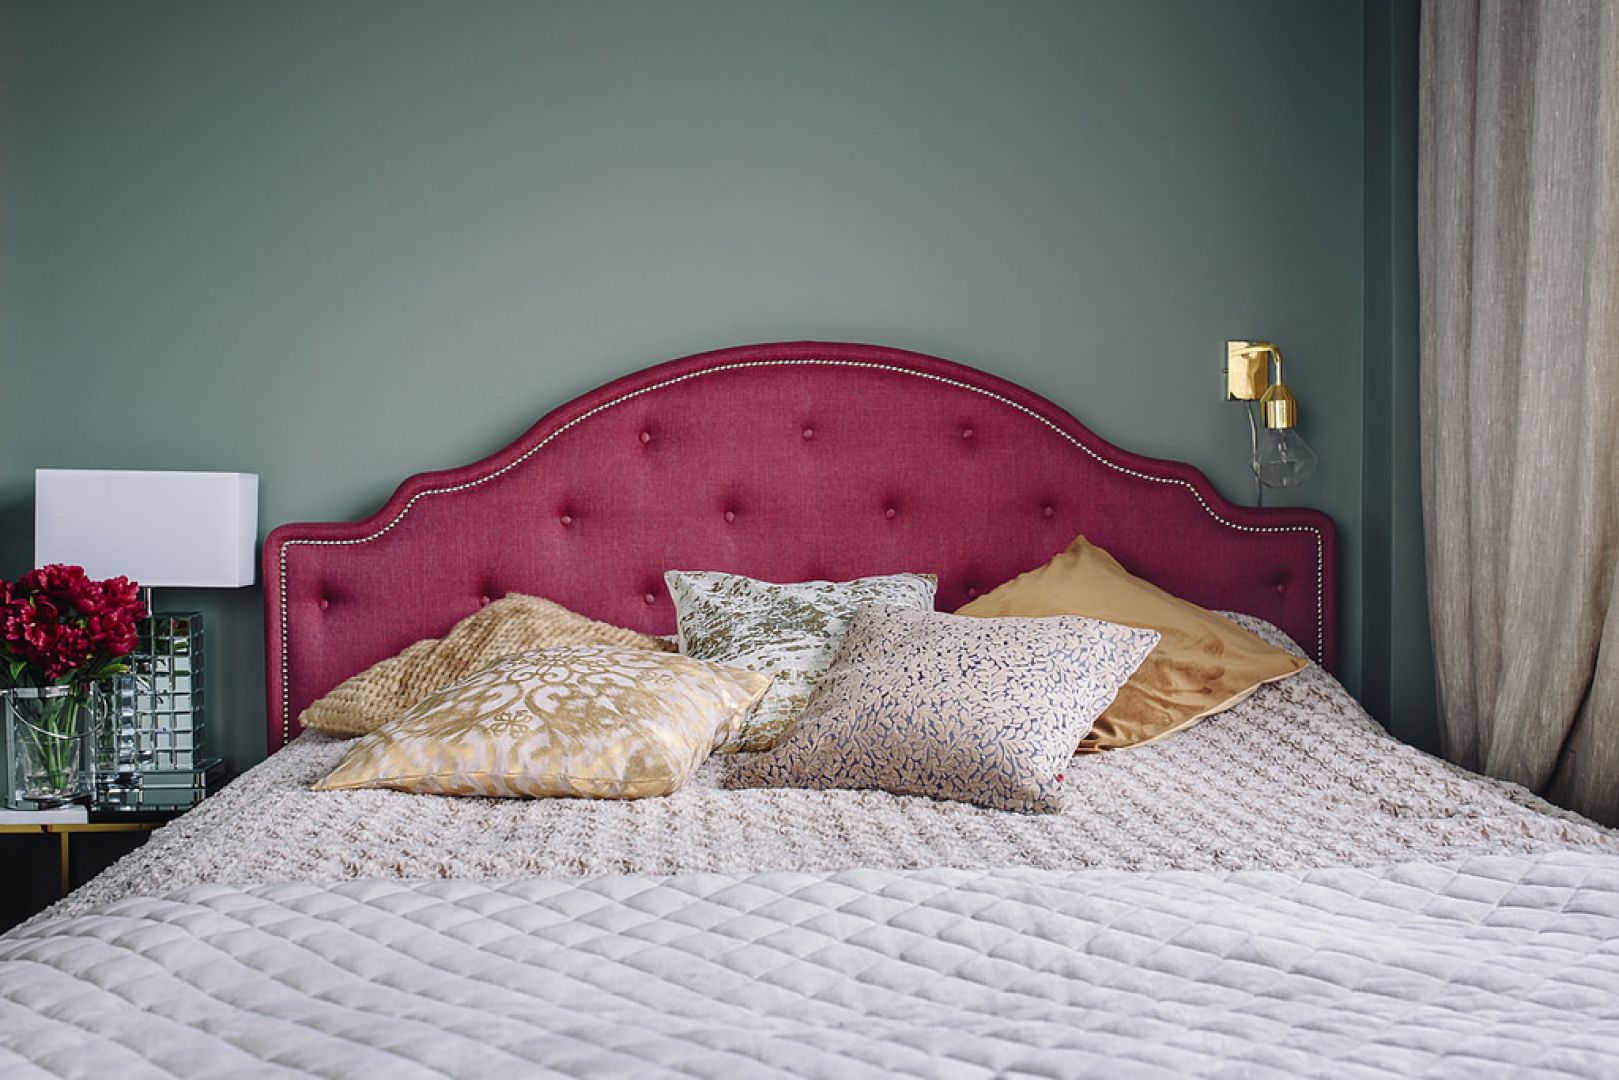 Łóżko Flores wprowadza do wnętrza styl glamour. Fot. Interiors Design Blog 